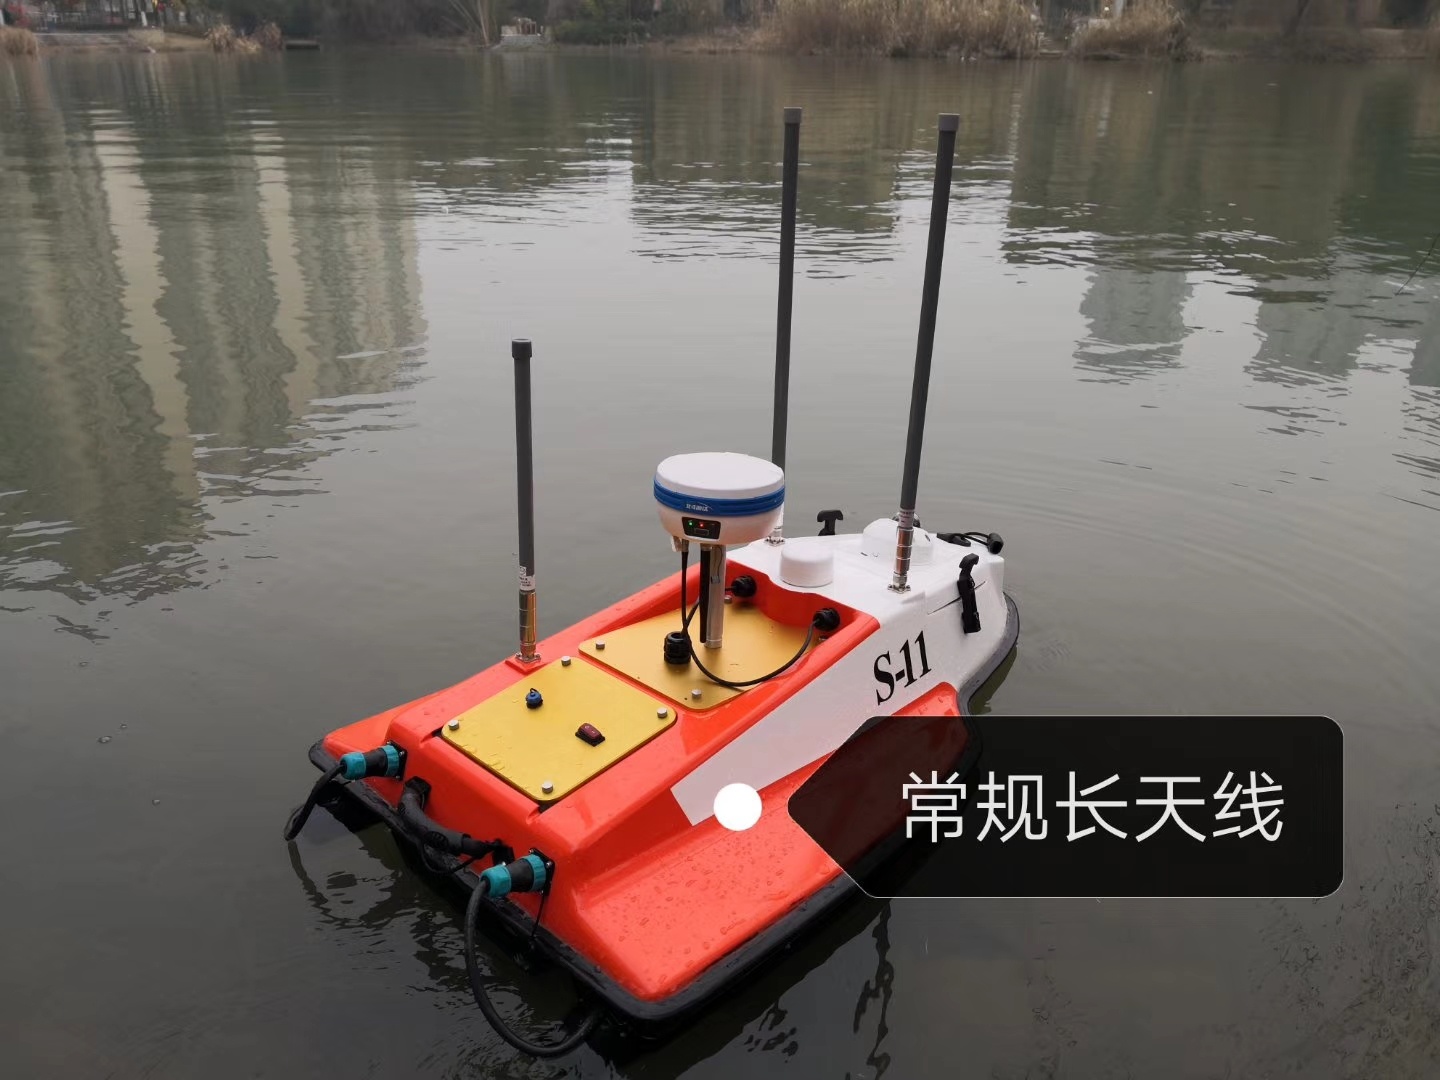 S-11小型智能无人自动测量船